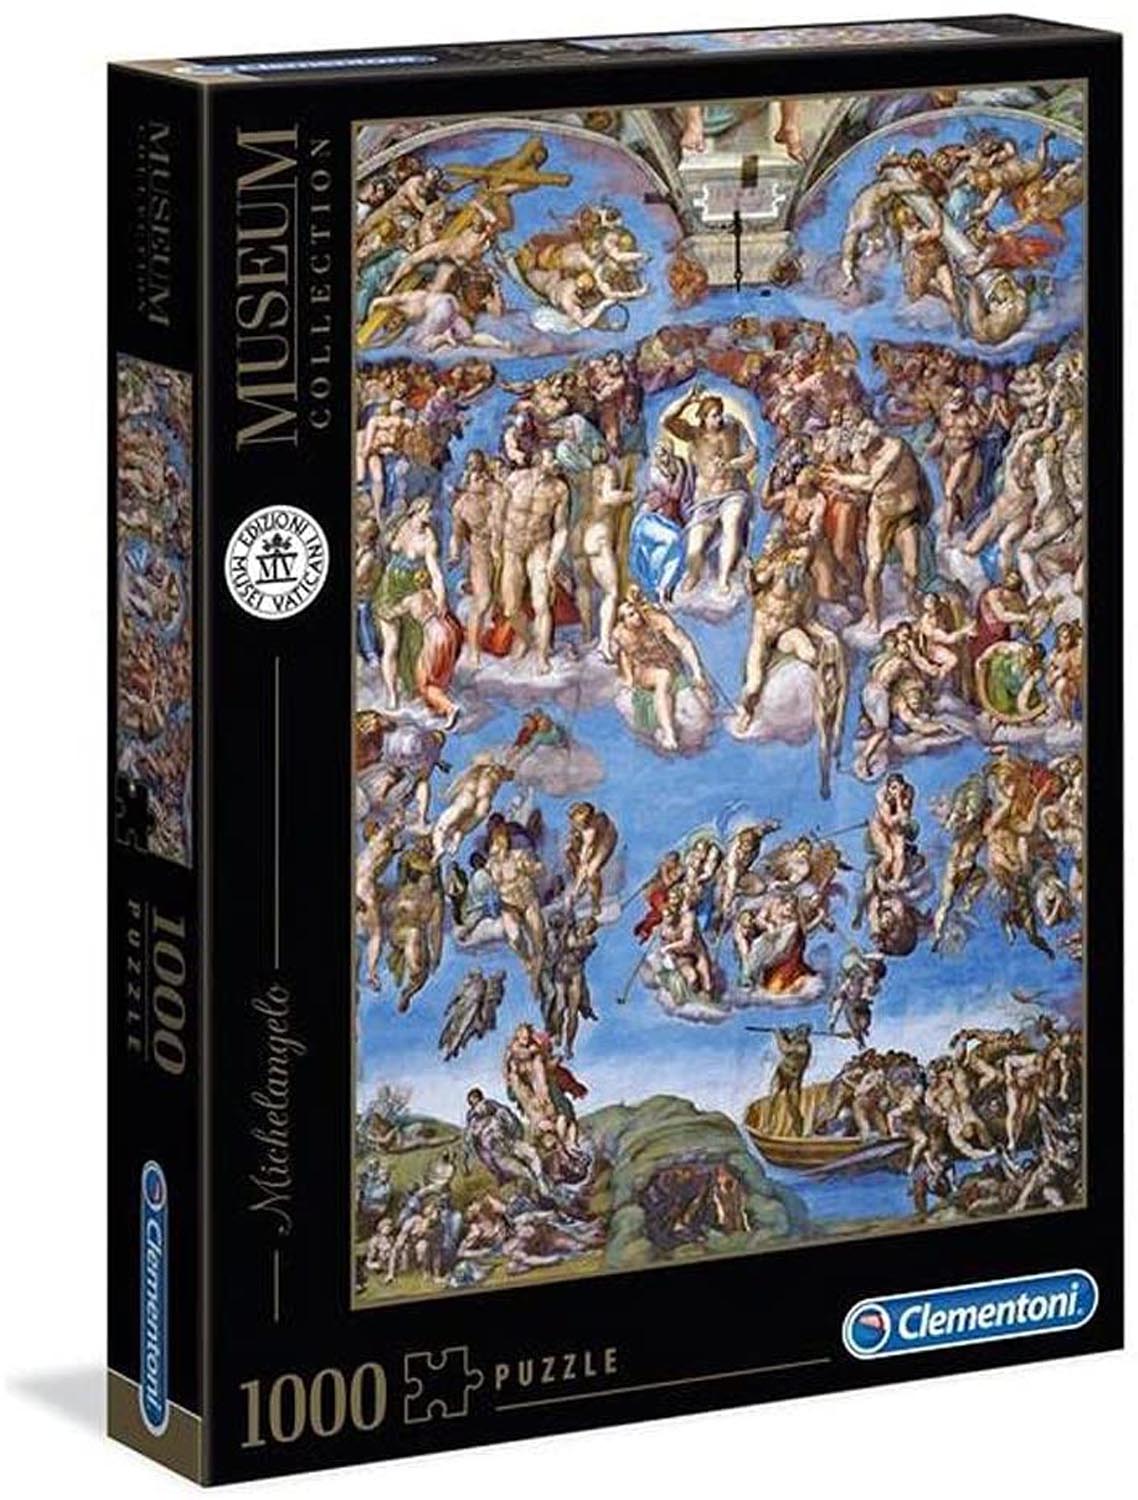 31416 Clementoni Puzzle 1000 Teile Musseum Collection Jacques Louis David The 